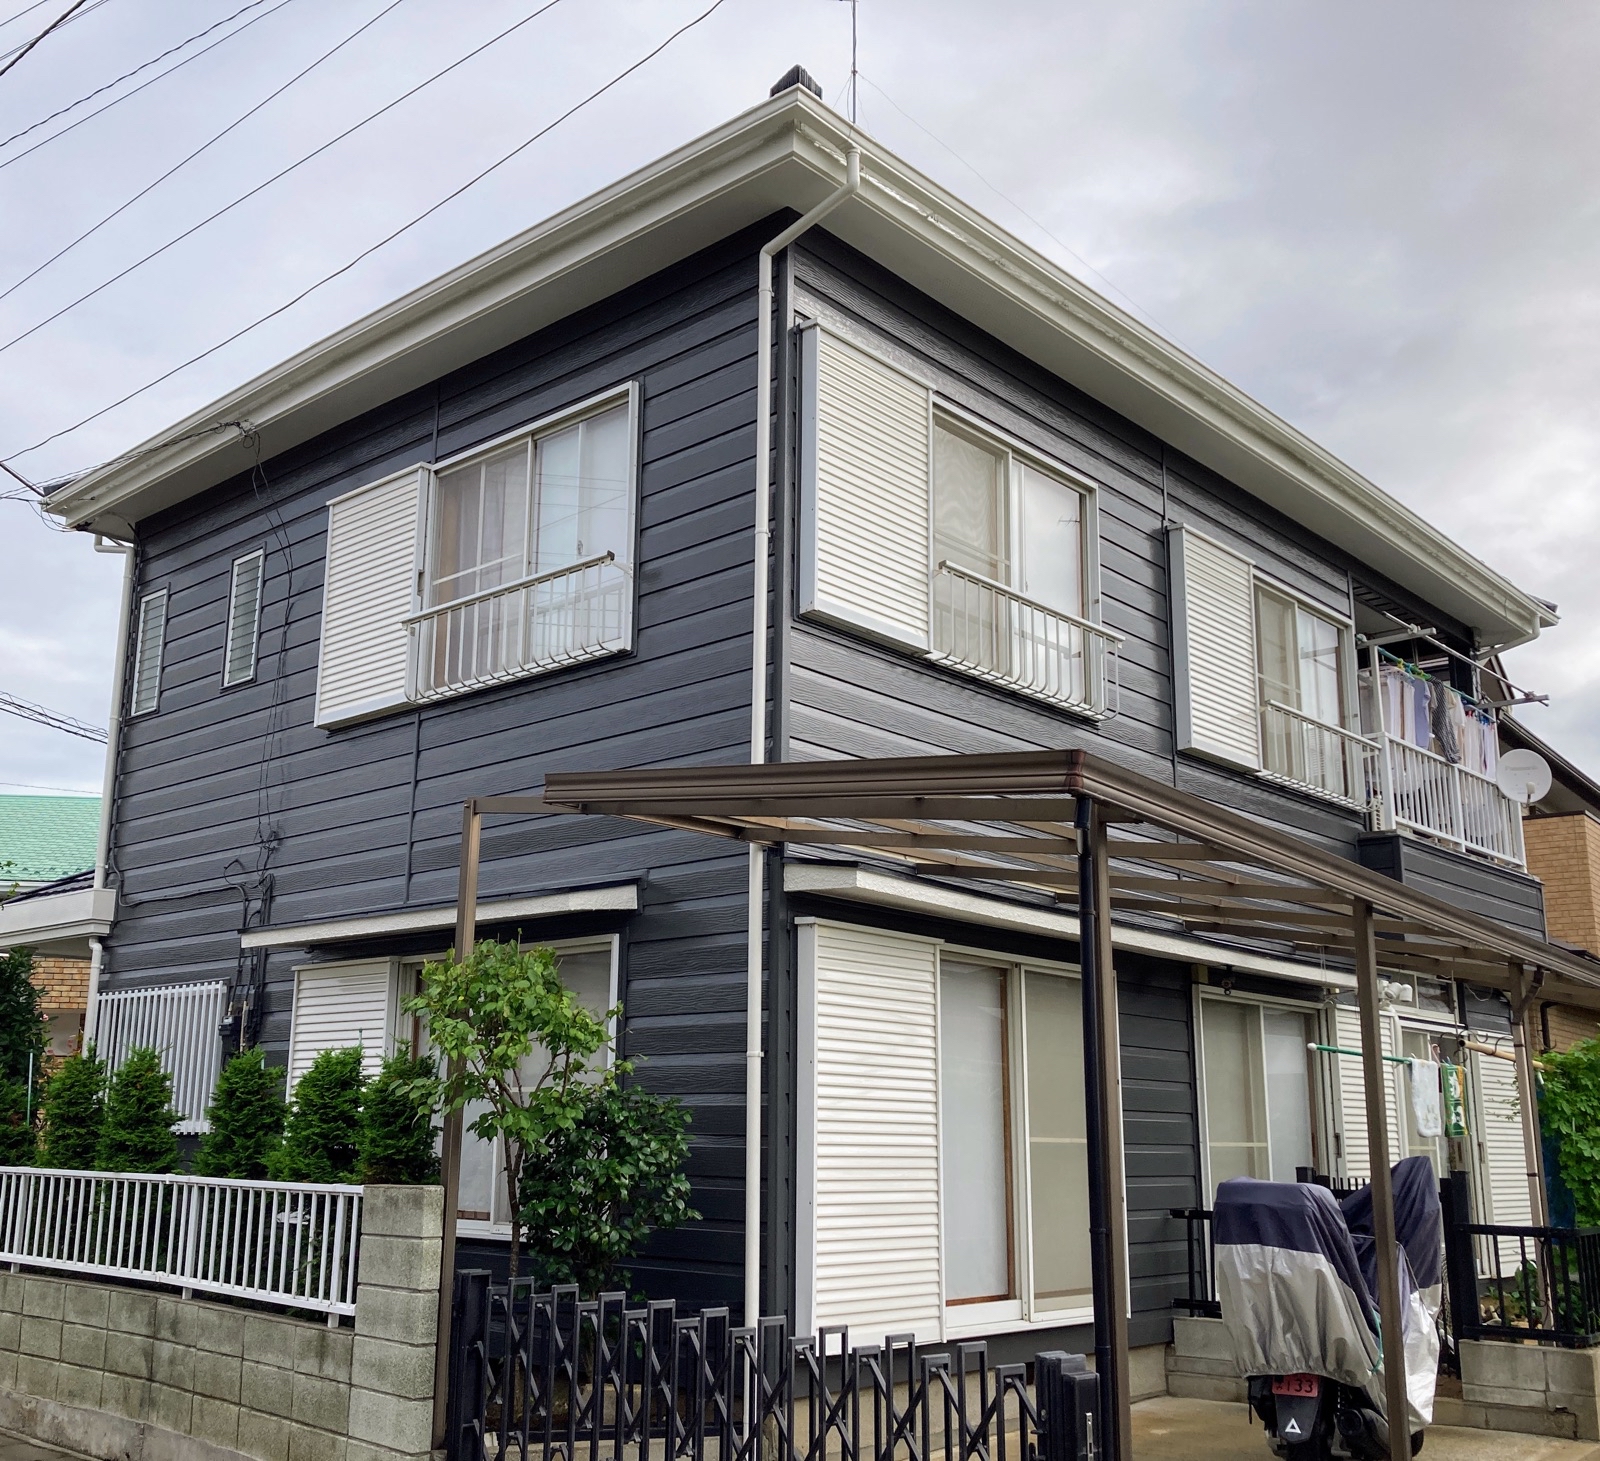 藤井社長のアドバイスとセンスの良さのおかげで見違える程、素敵な家になりました。